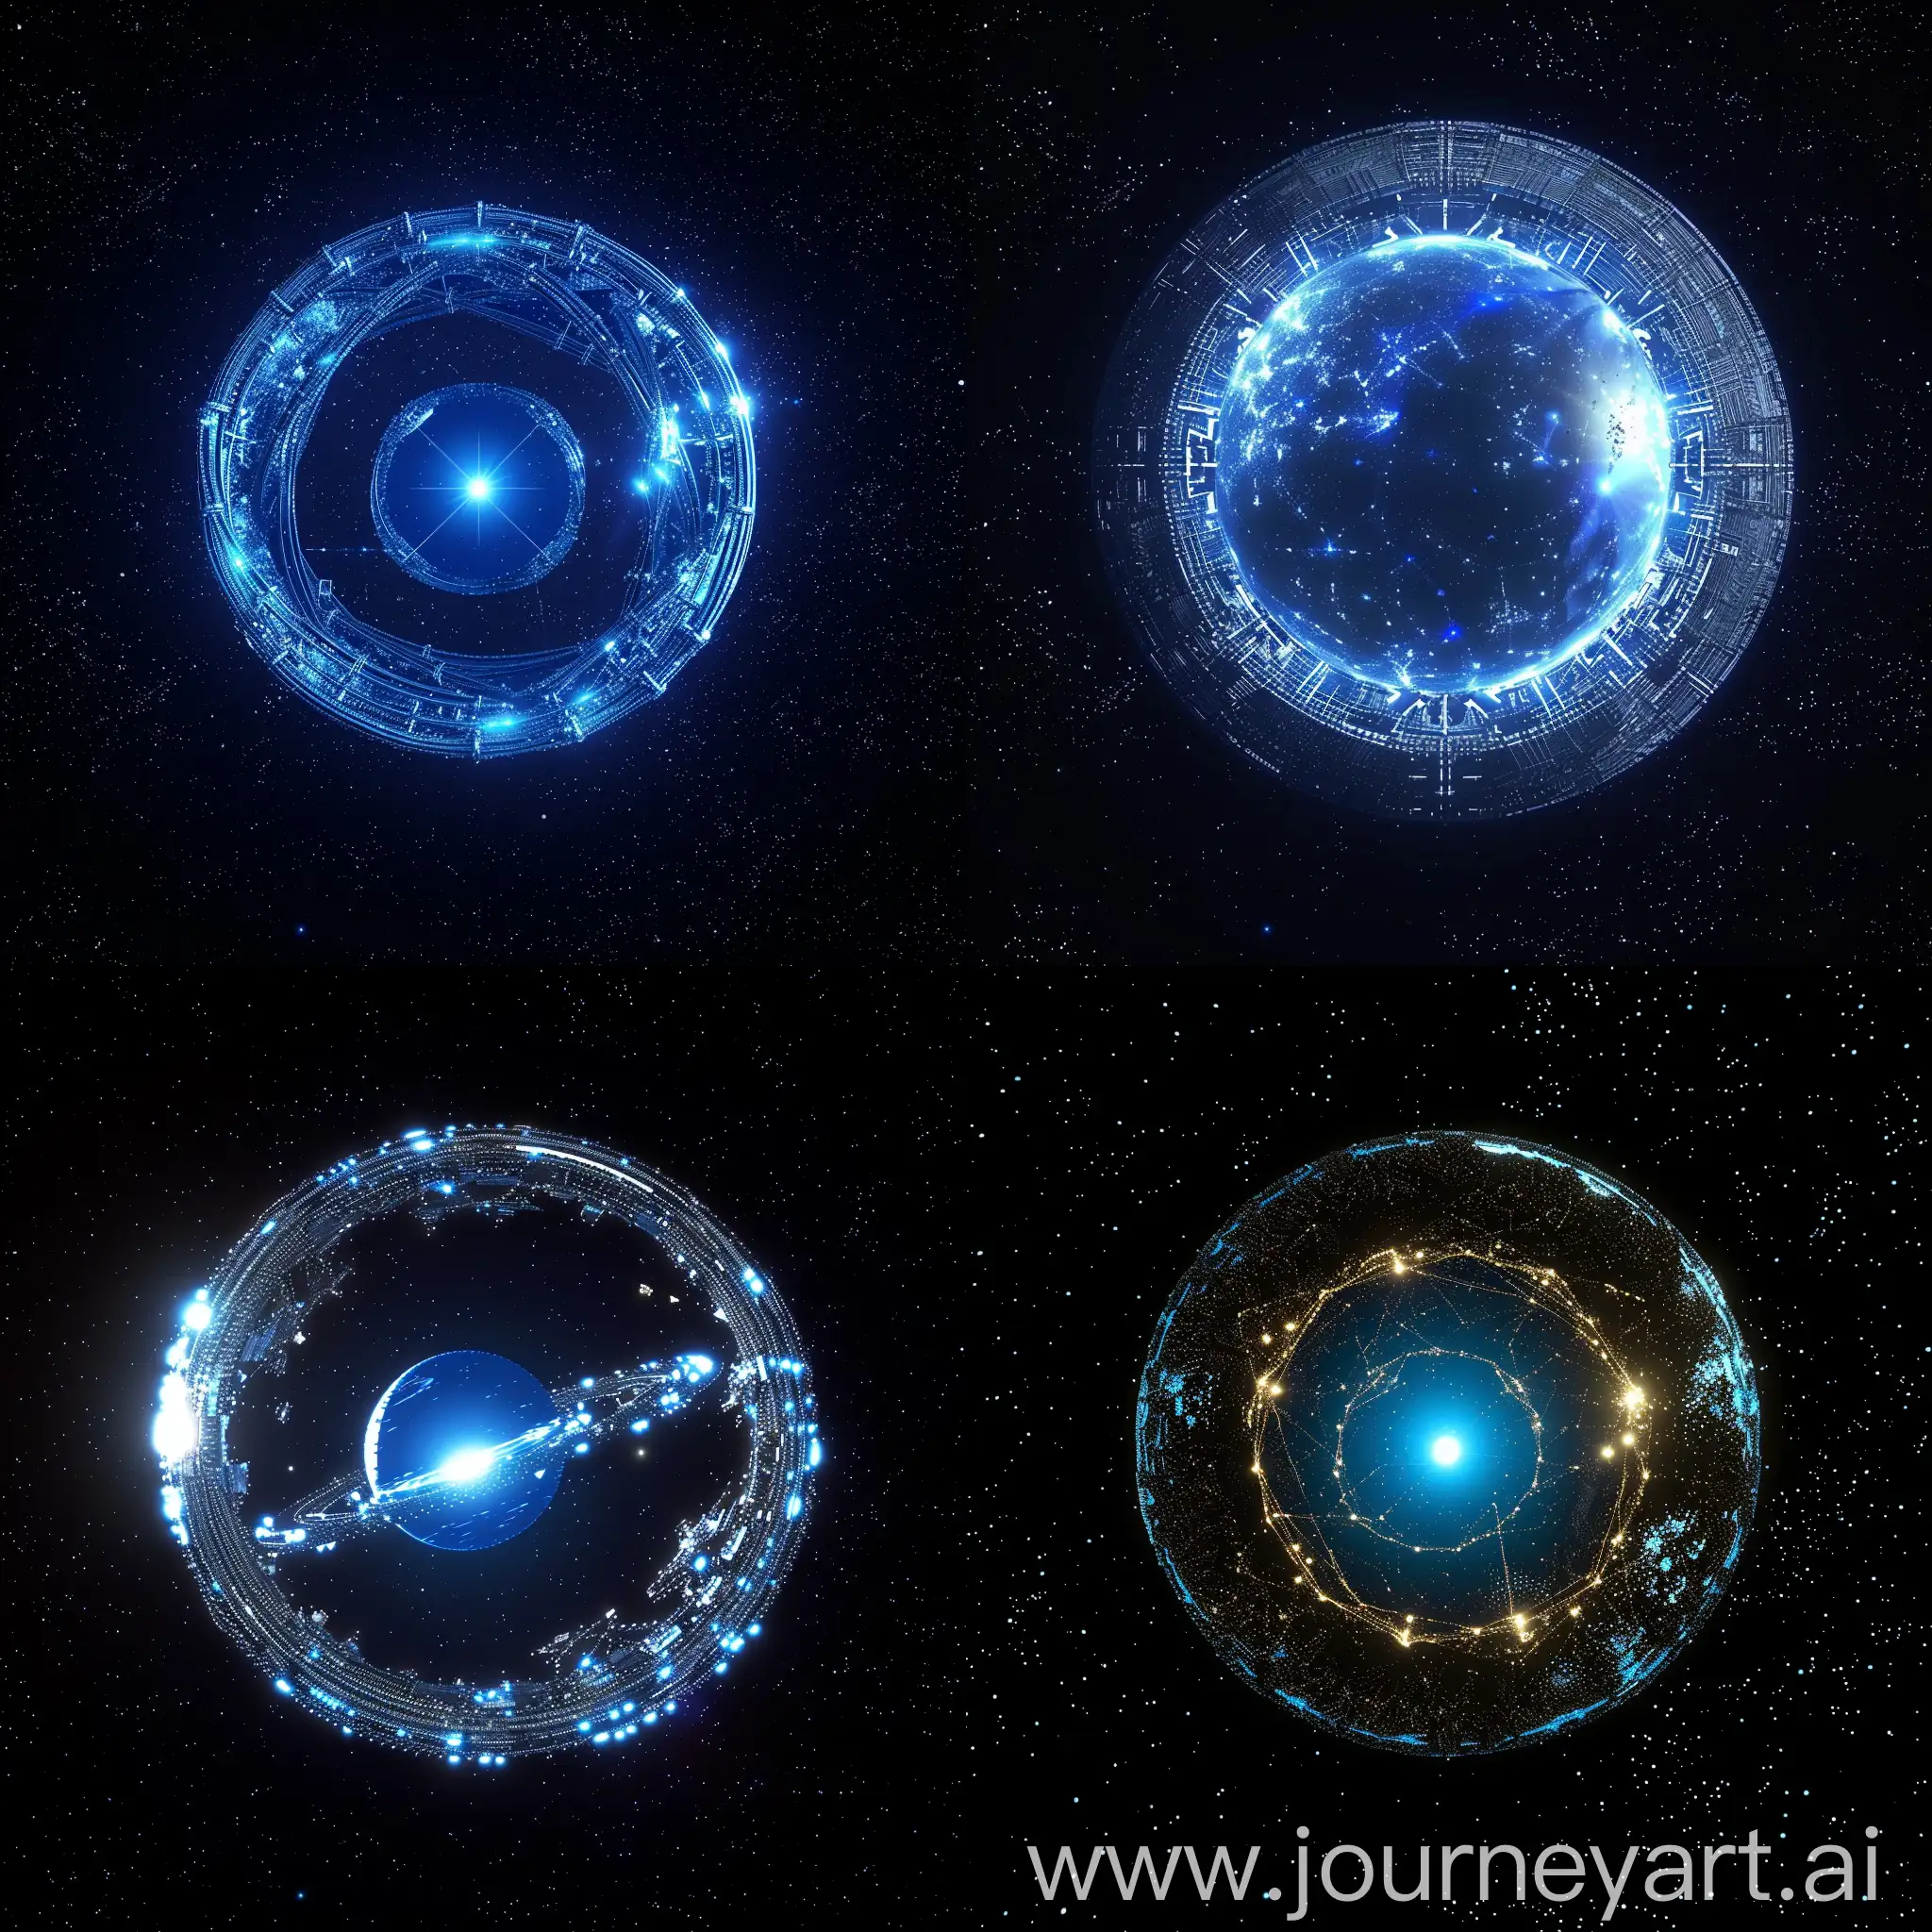 Erstelle ein Bild von einer Dyson-Sphäre, die um einen blauen Stern gebaut worden ist.